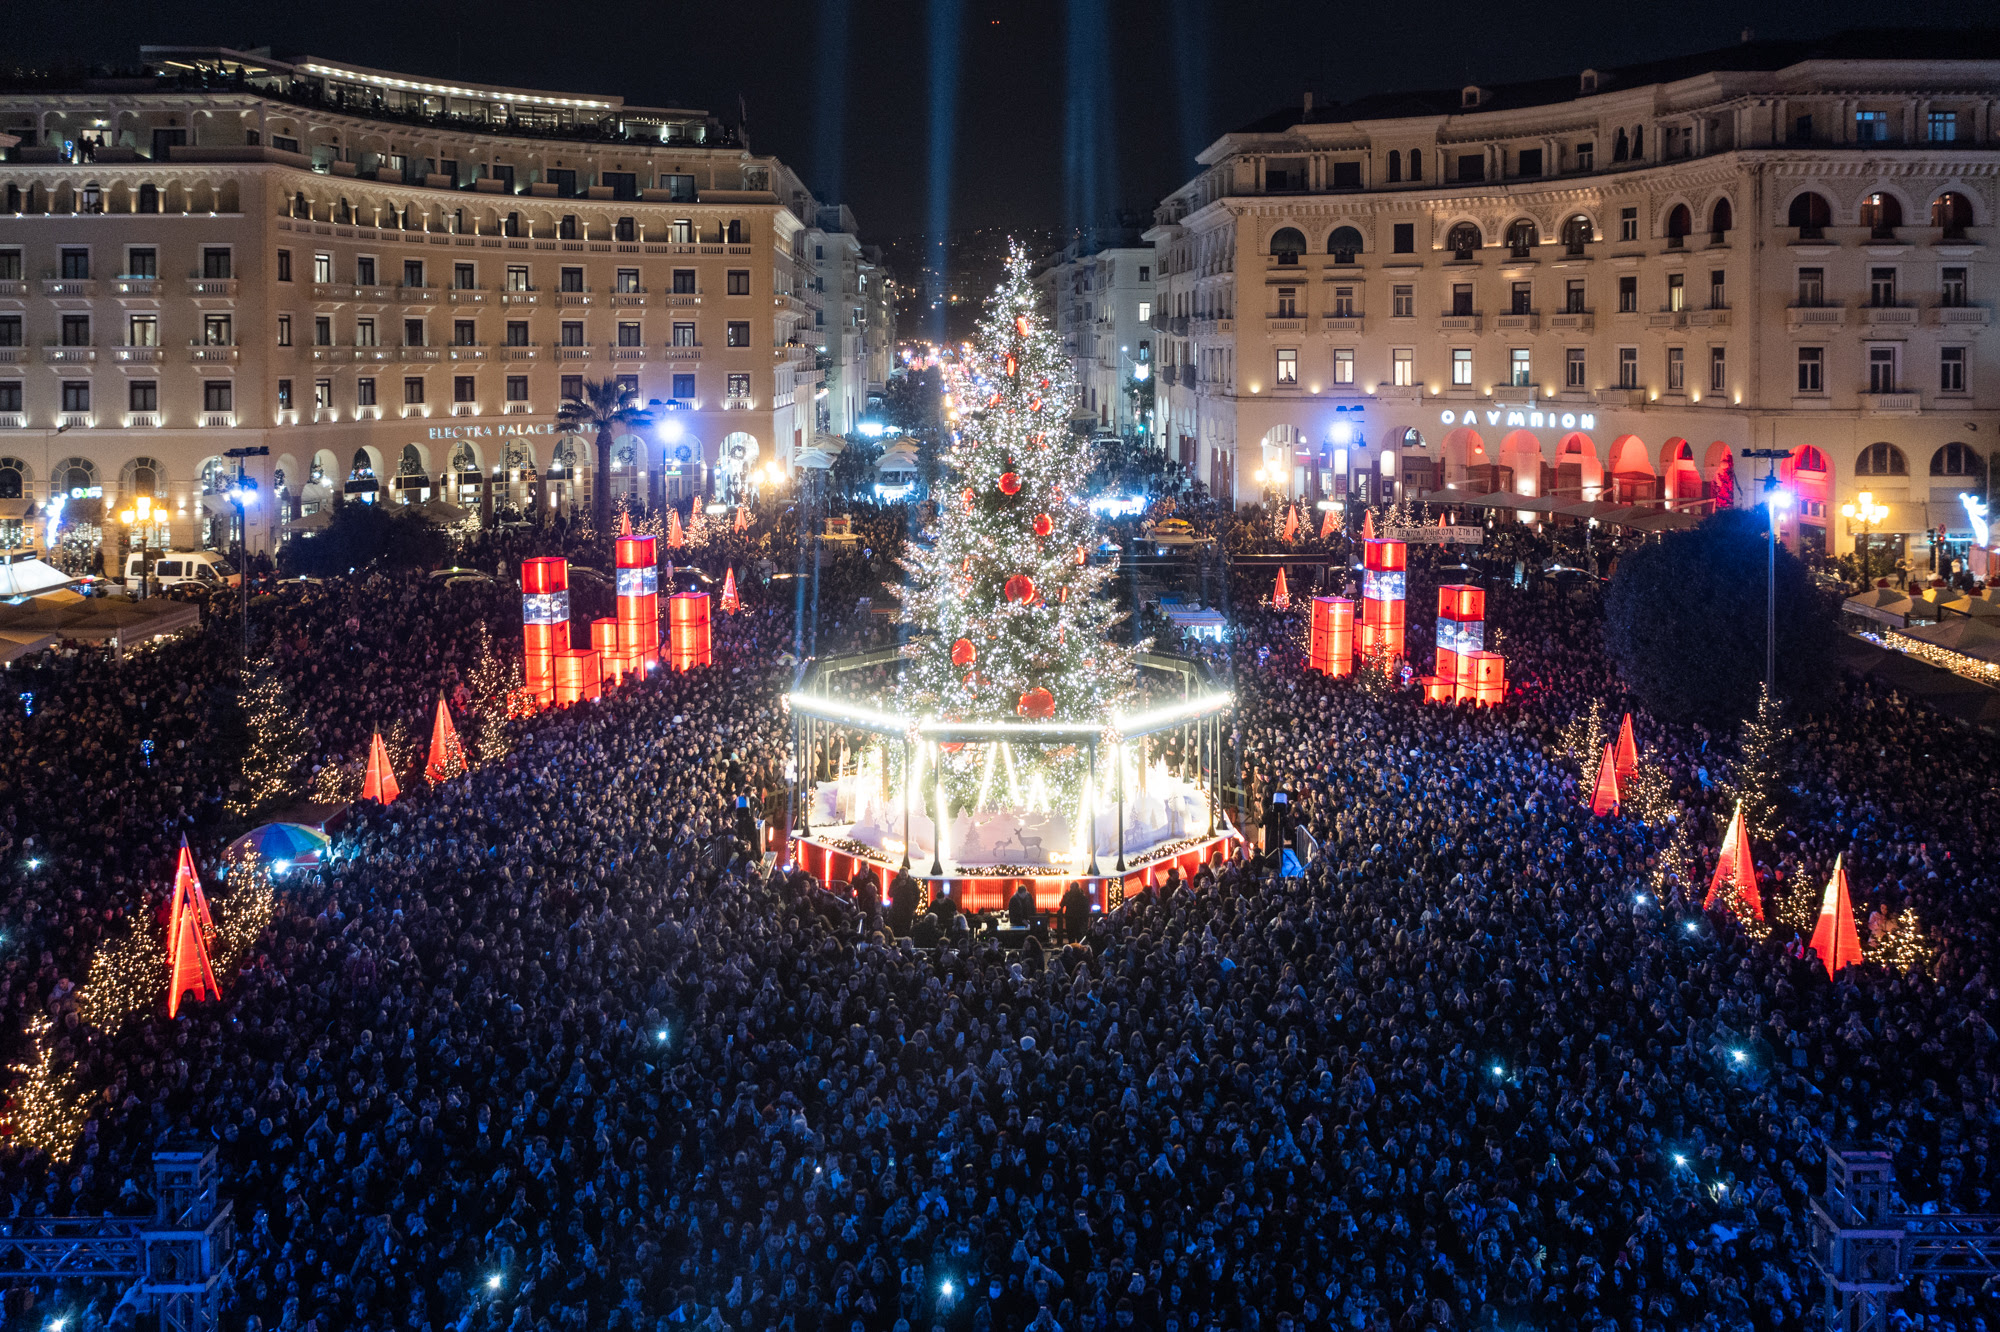 Άναψε το Χριστουγεννιάτικο δέντρο στην πλατεία Αριστοτέλους – Κ. Ζέρβας: «Στέλνουμε μήνυμα χαράς, αισιοδοξίας, ελπίδας κι αλληλεγγύης»